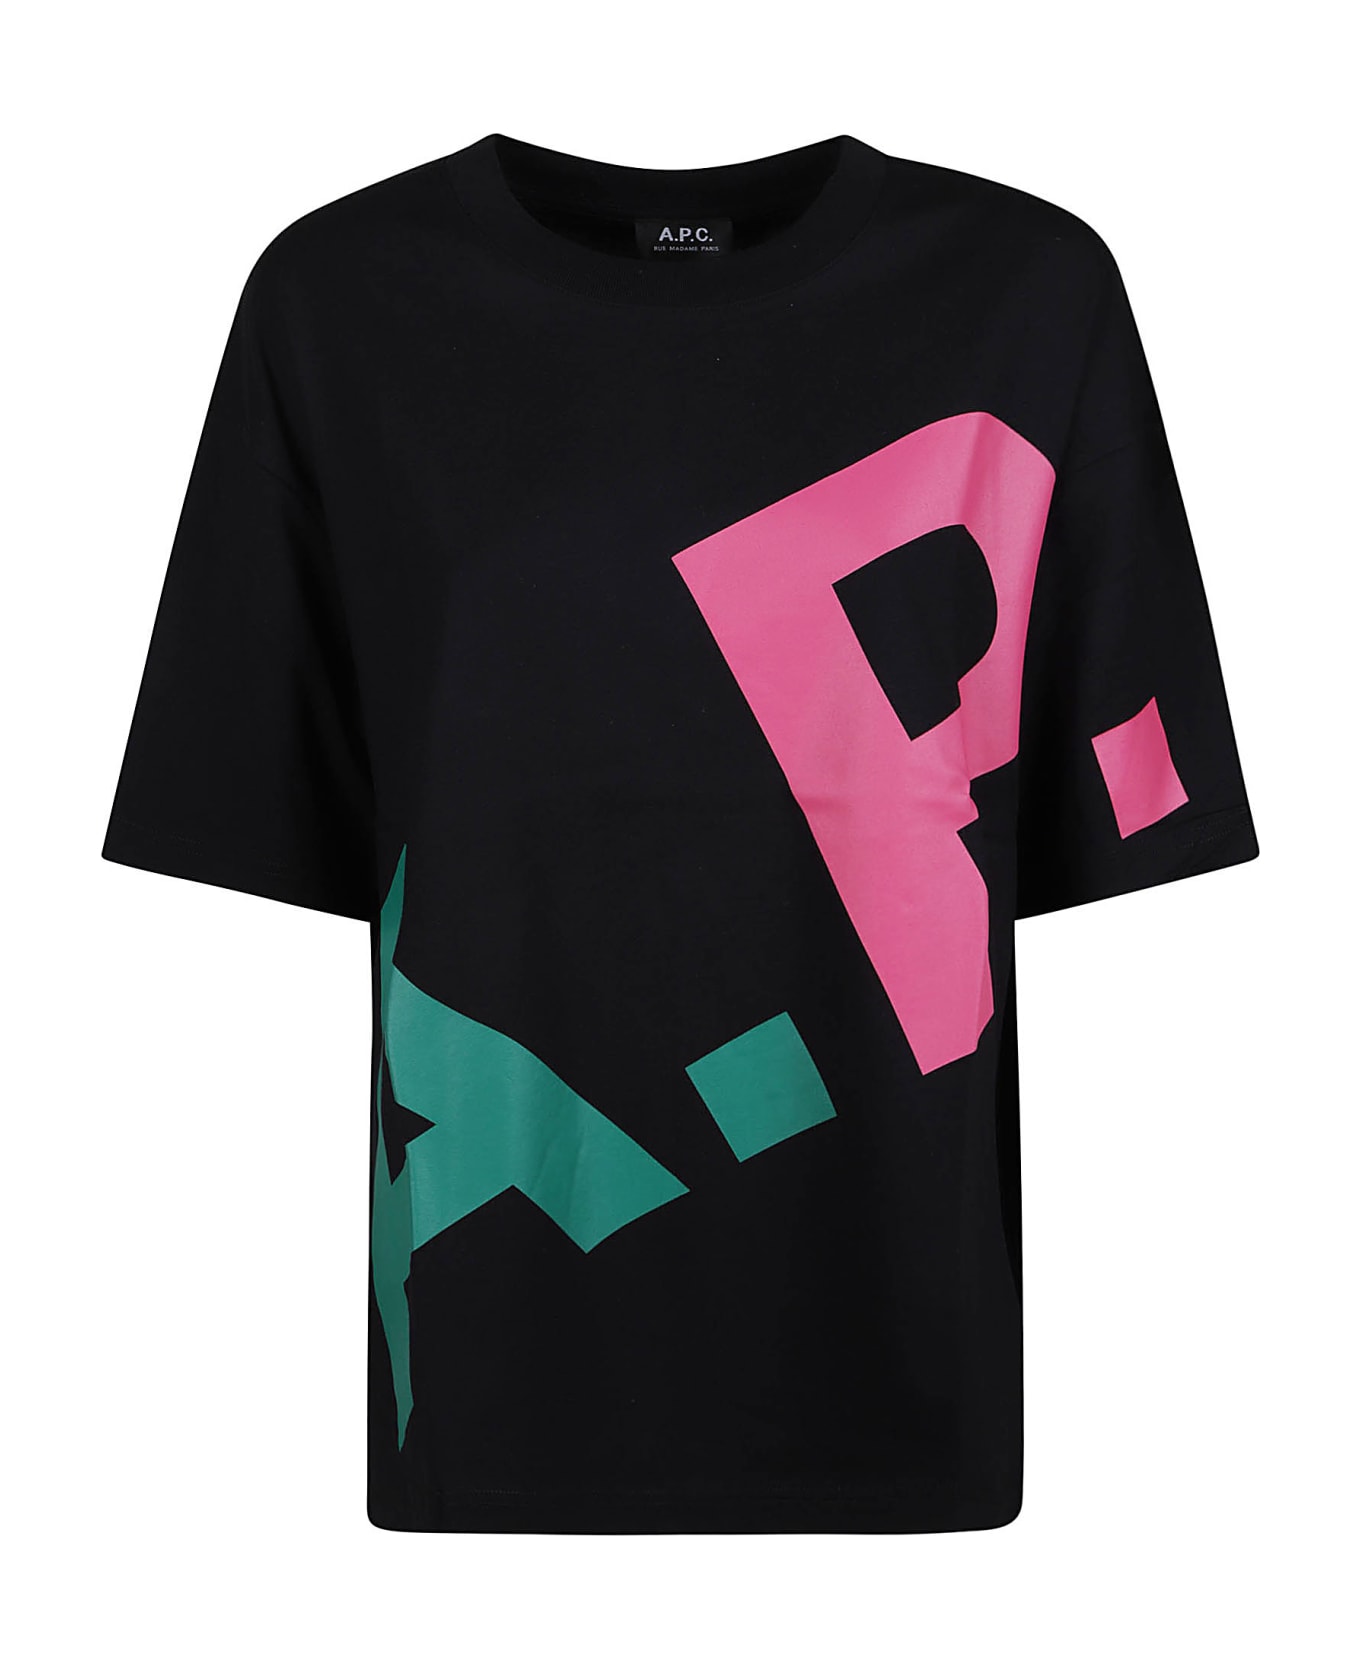 A.P.C. Lisandre T-shirt - BLACK MULTICOLOR Tシャツ